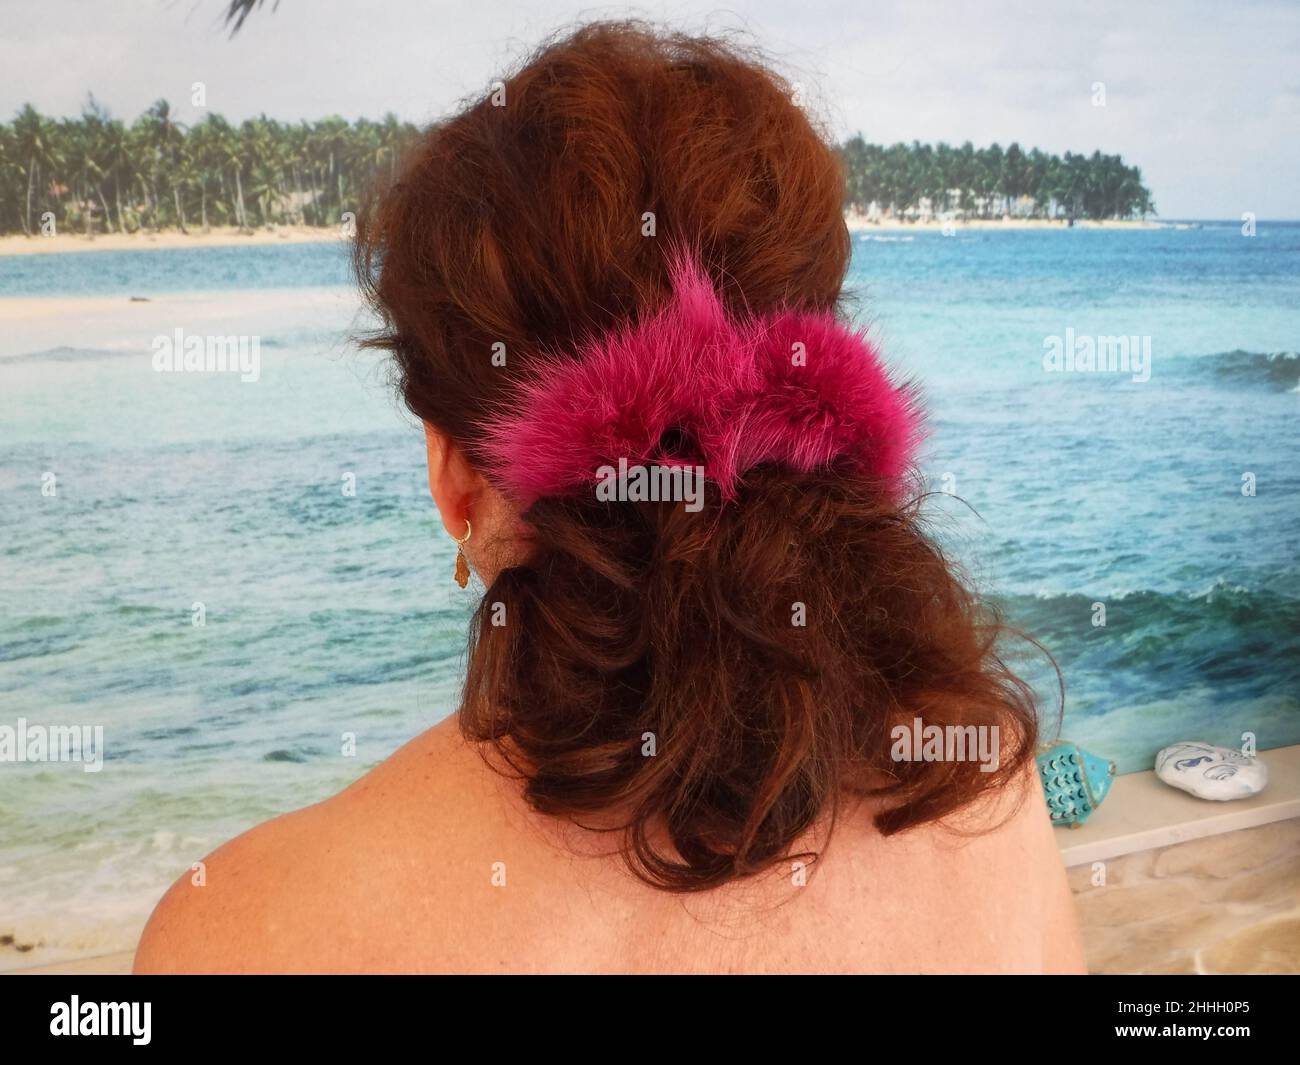 Frau von hinten am Strand, mit einem pinkfarbenen Schrunchie aus Fuchsfell im Haar * woman with a pink scrunchie overlooking a tropical lagoon Stock Photo